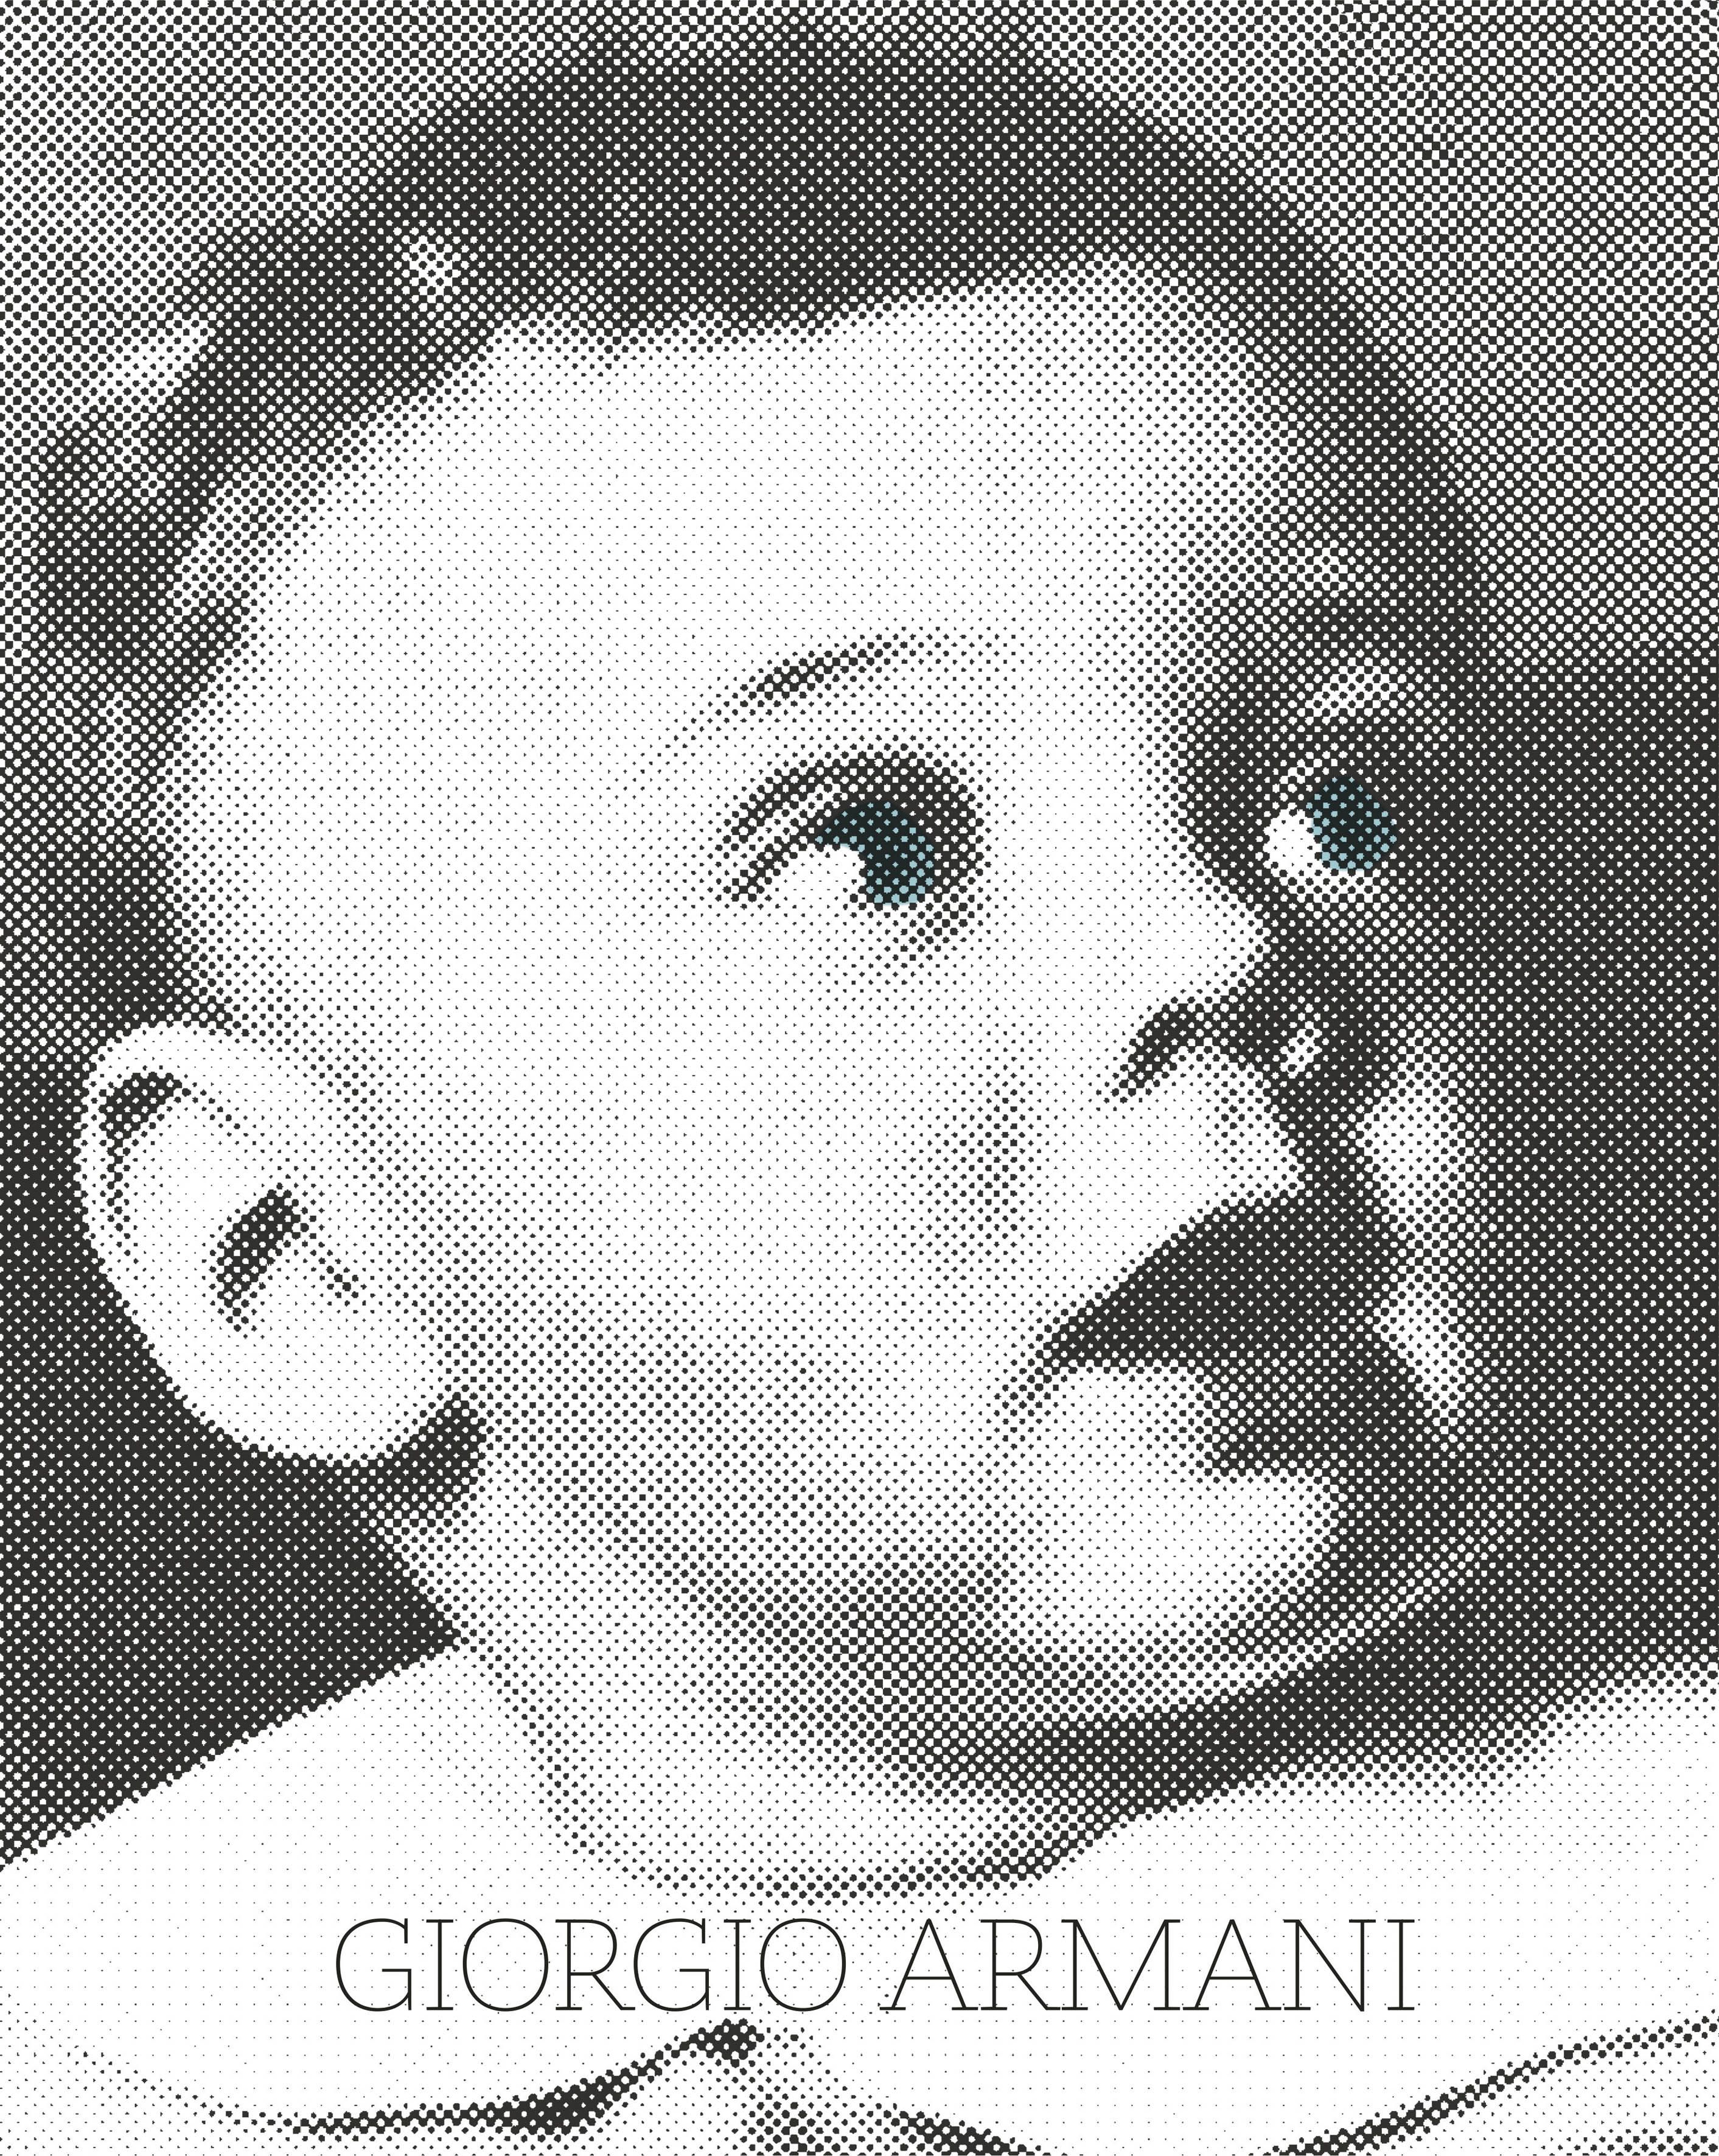 La copertina del libro Giorgio Armani (Rcs libri)